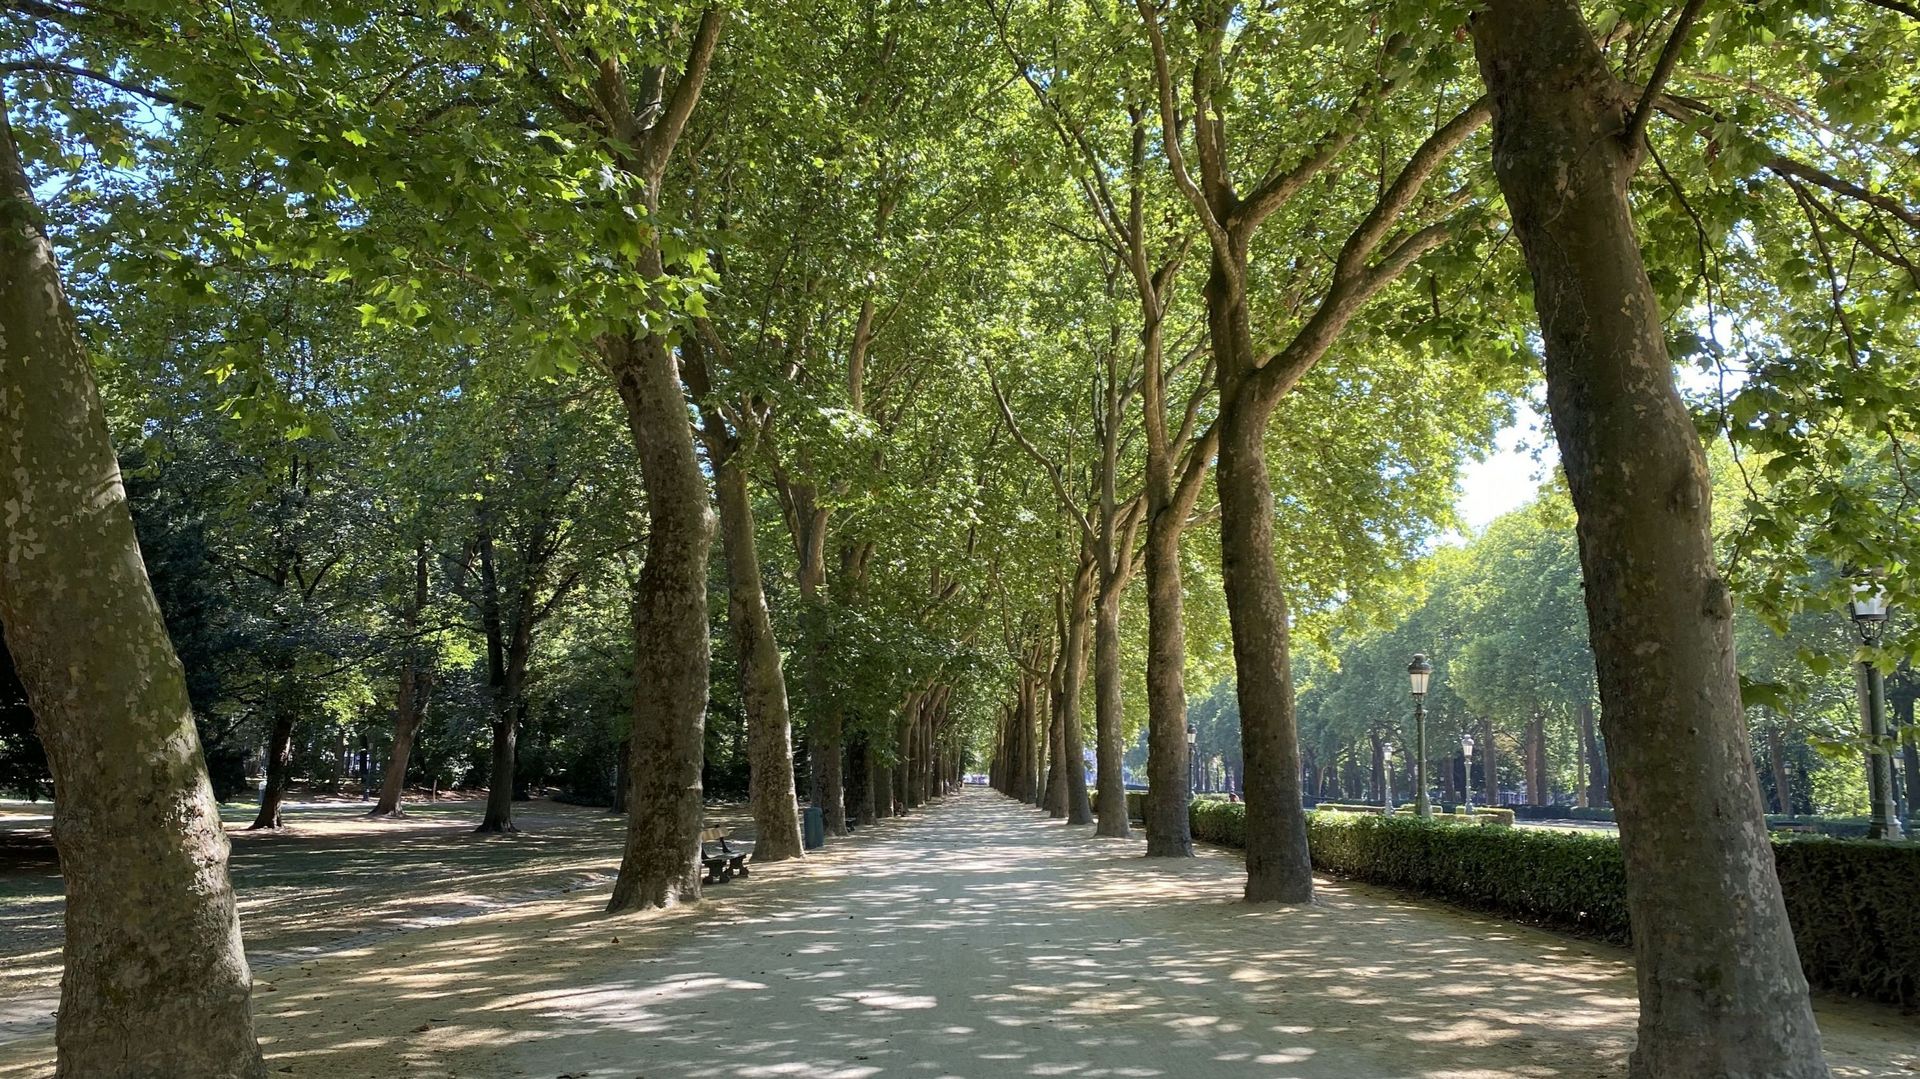 Les jolies allées bordées d’arbres du parc Elisabeth serviront de cadre de jeu pour les joueurs de pétanque